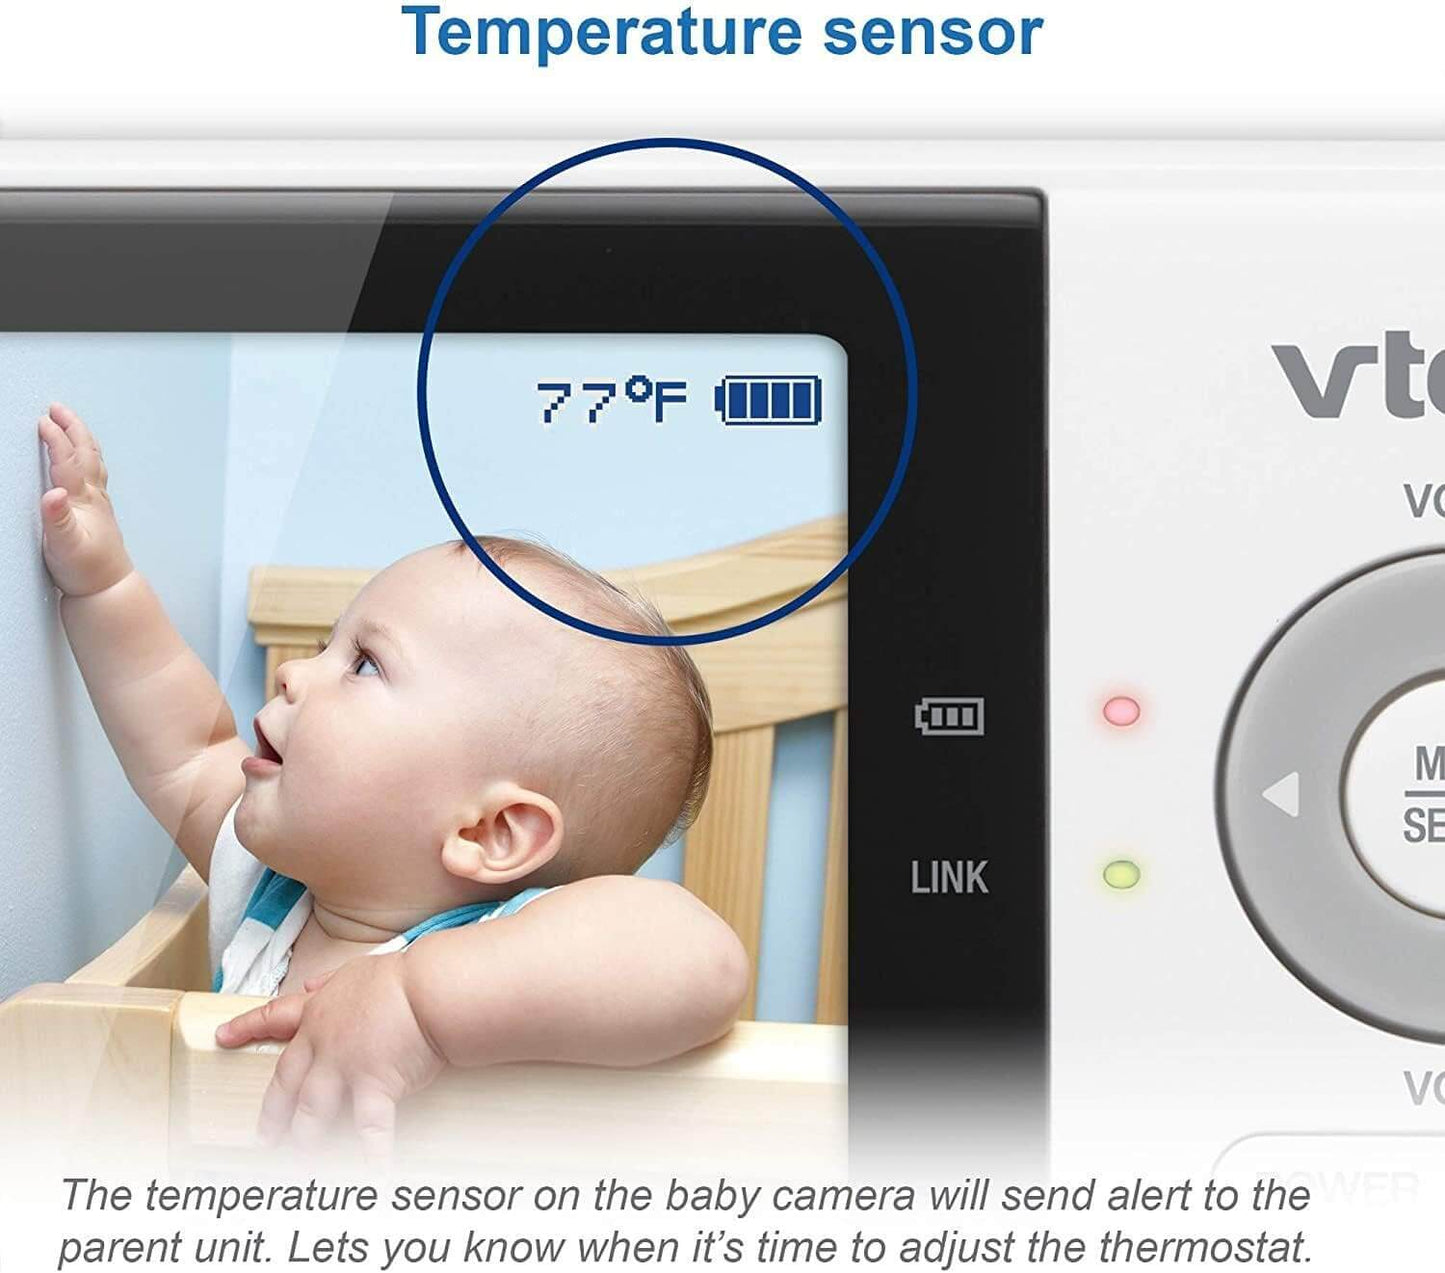 VM819 2.8" Digital Video Baby Monitor